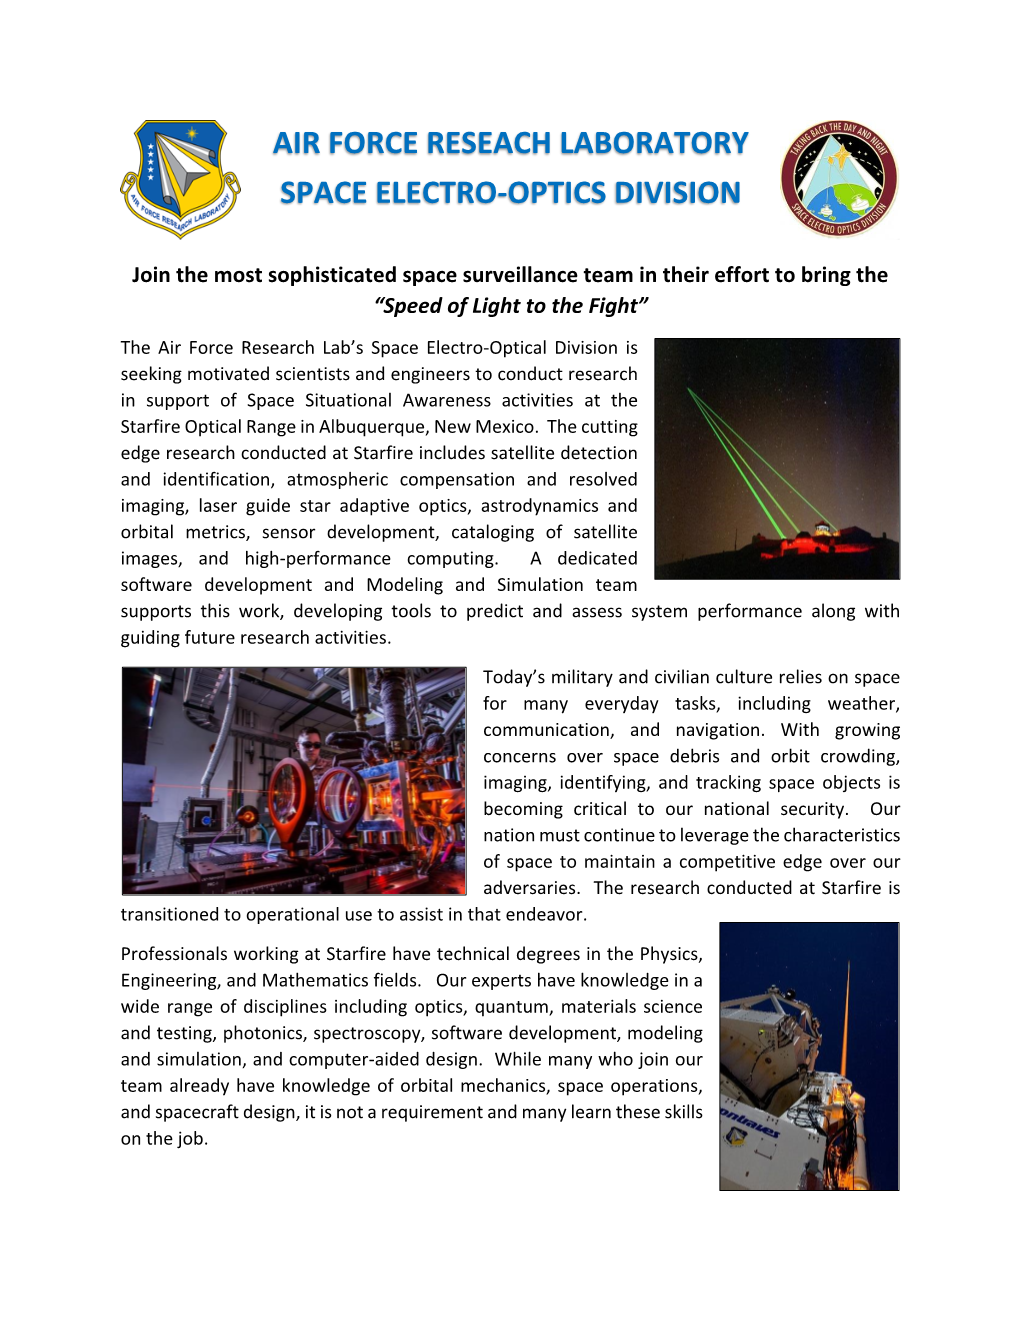 Space Electro-Optics Division